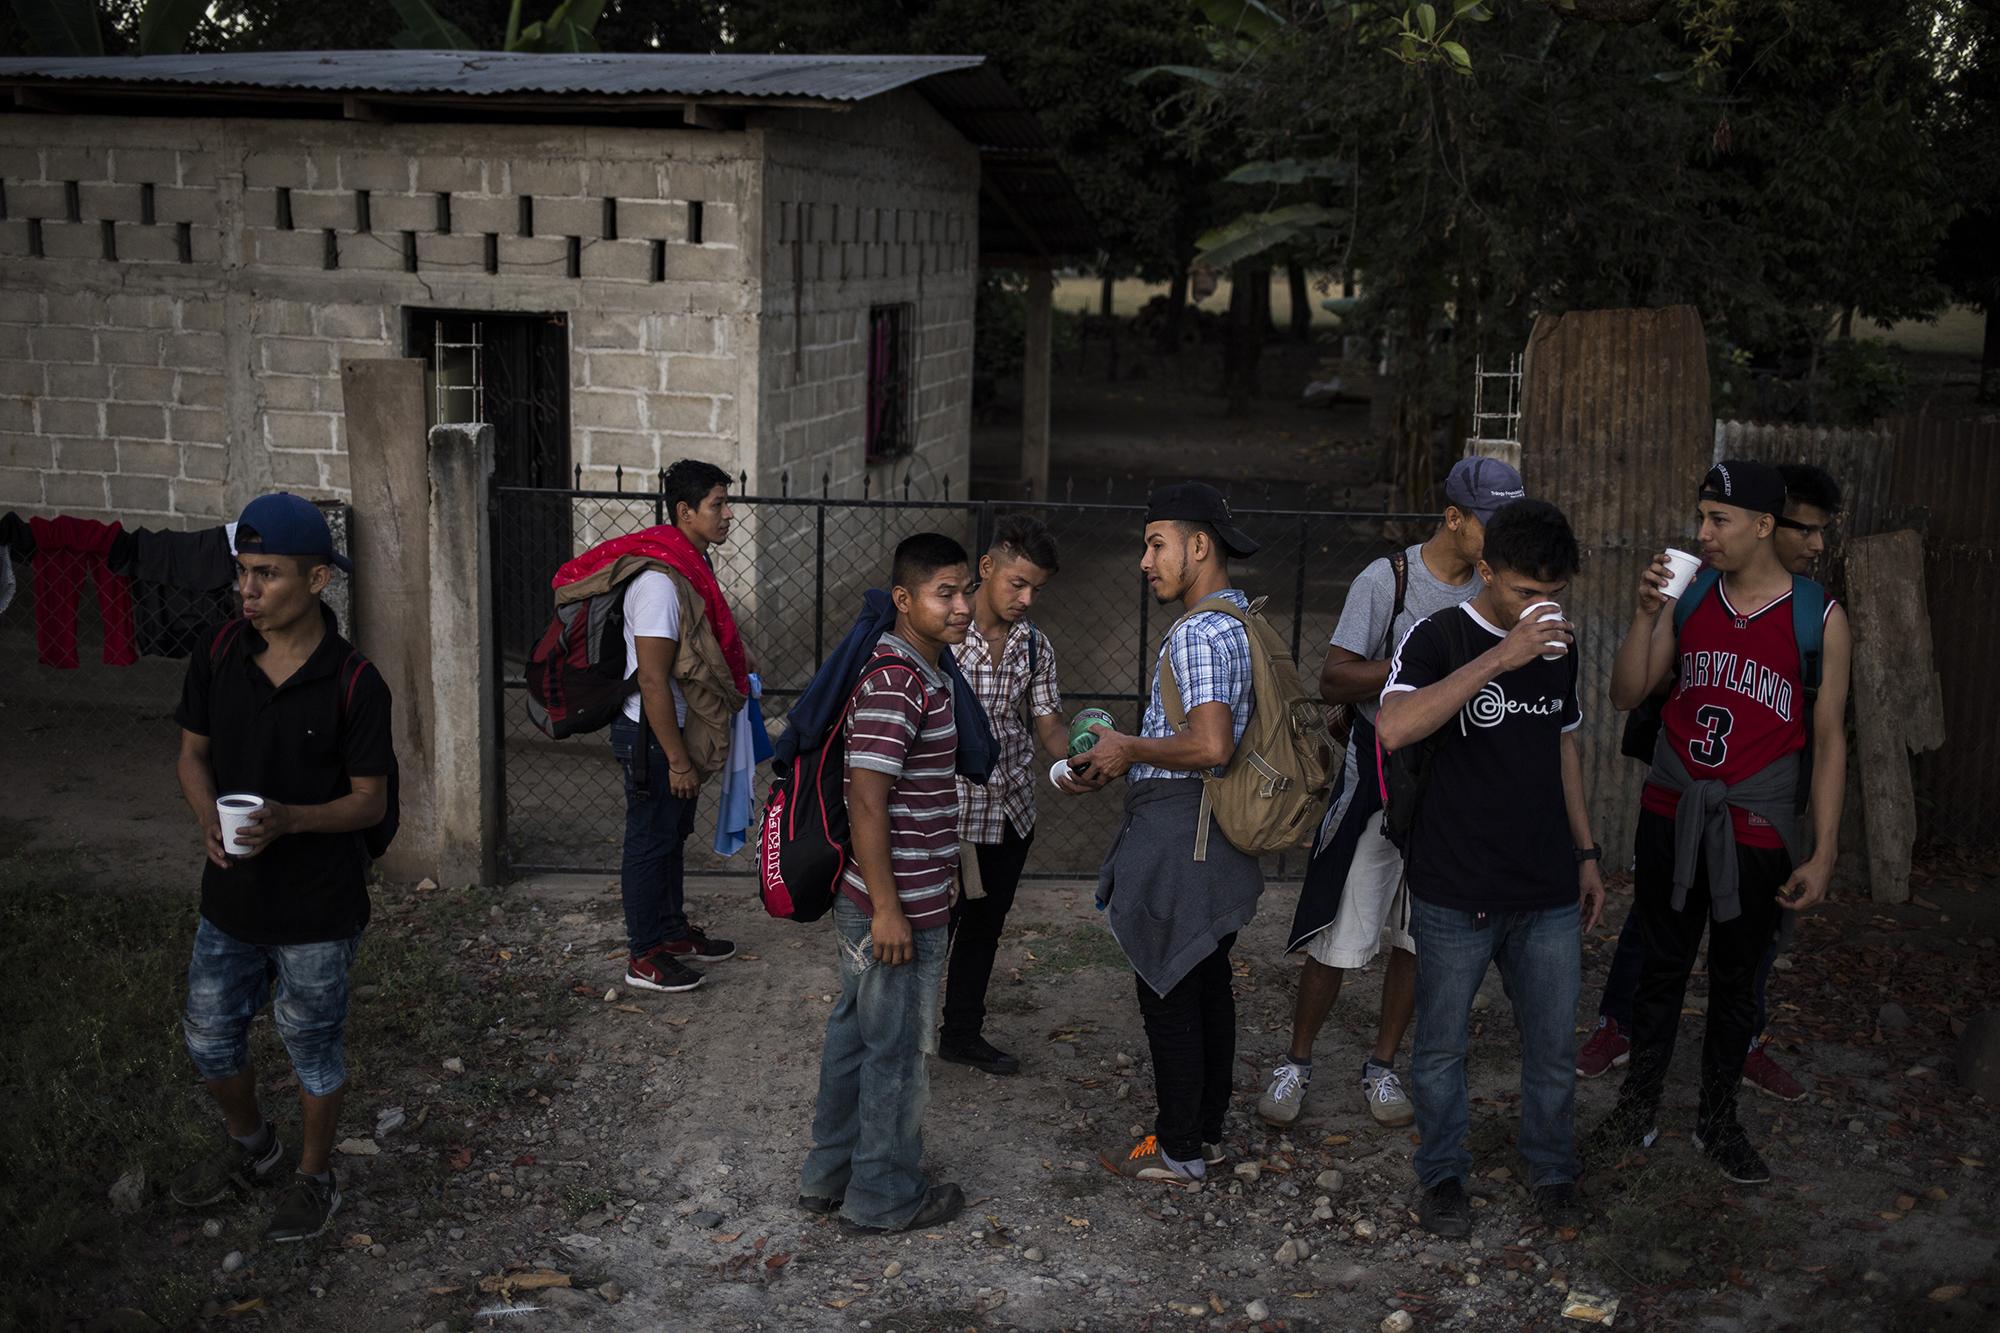 Un grupo de hondureños descansa frente a una vivienda en Ciudad Hidalgo, Chiapas, México, después de descreer en la propuesta oficial de México, cruzar la frontera y caminar por tres horas, el 18 de enero. En esa vivienda, a los migrantes les regalaron comida, agua y frutas para el camino.